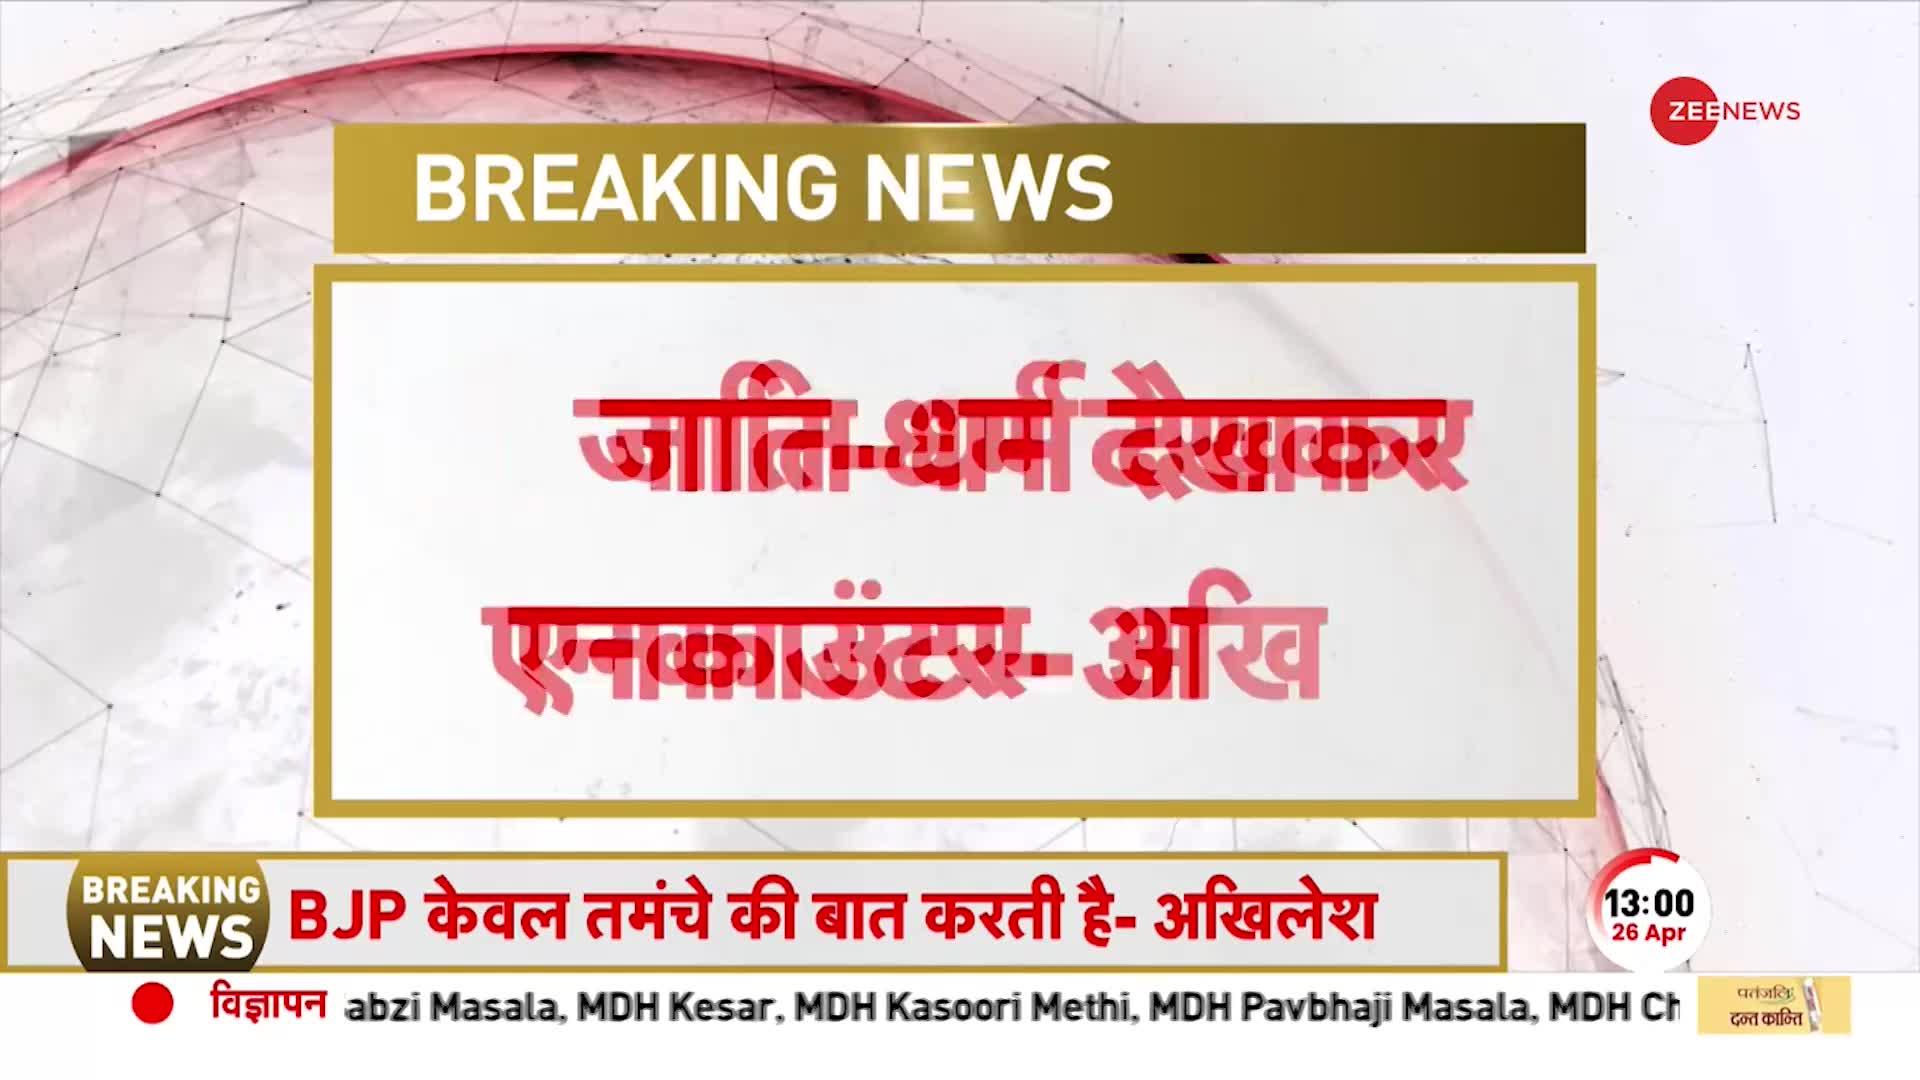 Akhilesh Yadav Attacks BJP: SP अध्यक्ष ने योगी सरकार को घेरा कहा, 'यूपी में तमंचे वाली सरकार है'